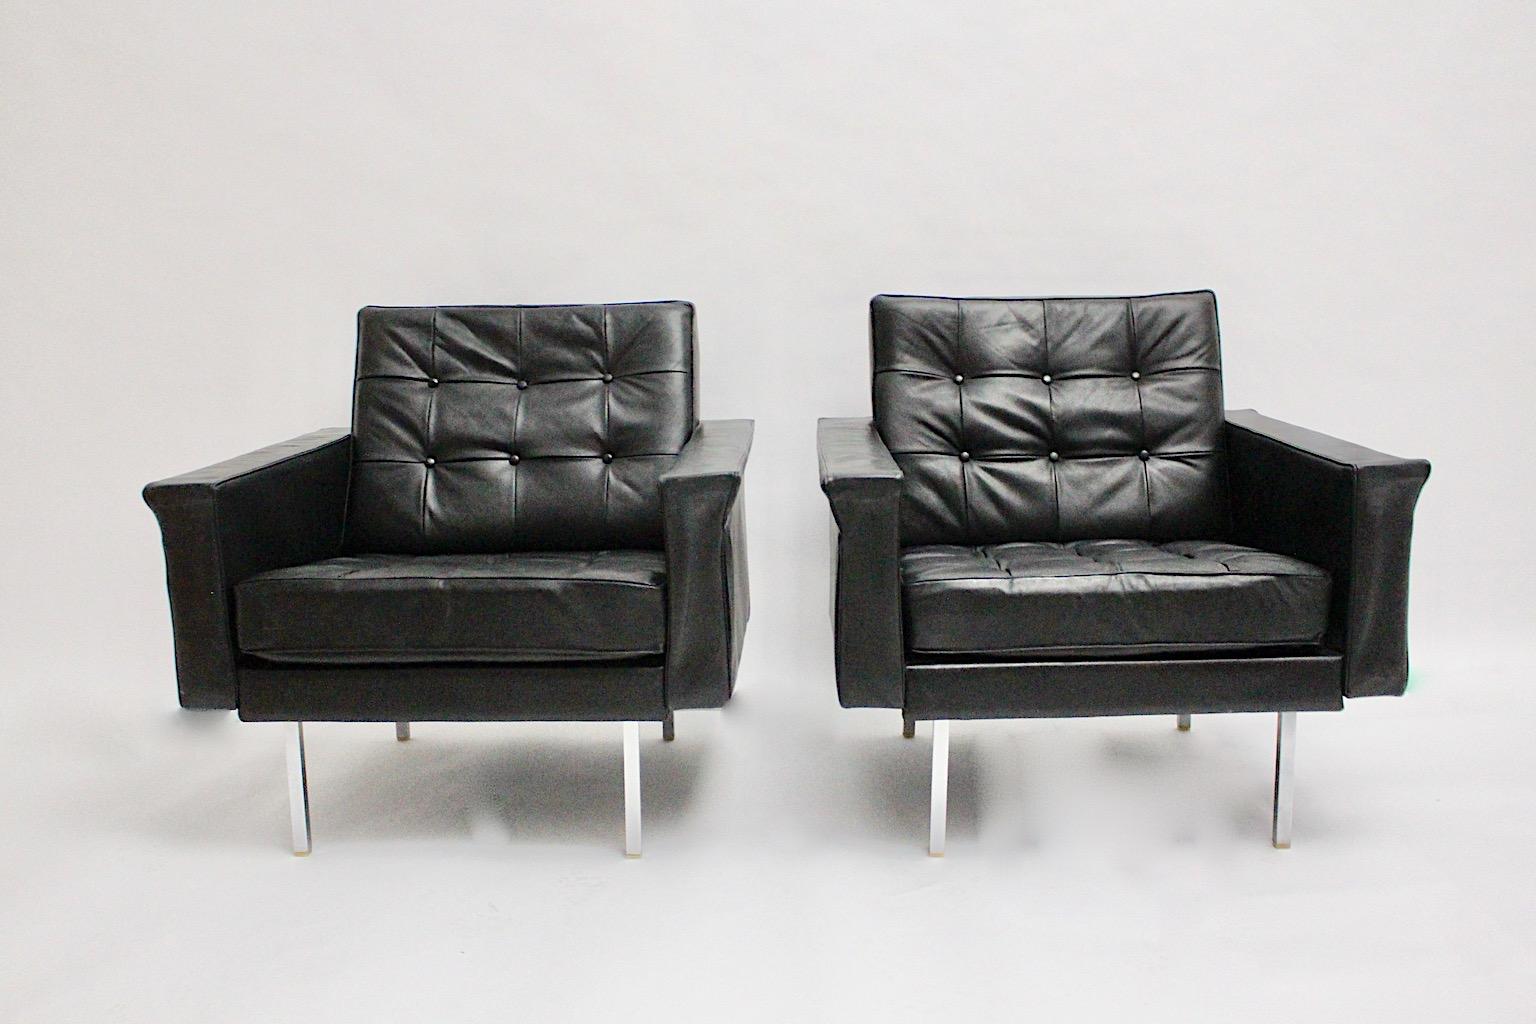 Mid Century Modern Paar Vintage freistehende Lounge Sessel oder Clubsessel cubus wie aus genähtem Leder in schwarzer Farbe von Johannes Spalt, 1960er Jahre Wien. 
Ein Paar fabelhafte Clubsessel aus schwarzem Leder mit verchromten Metallbeinen in